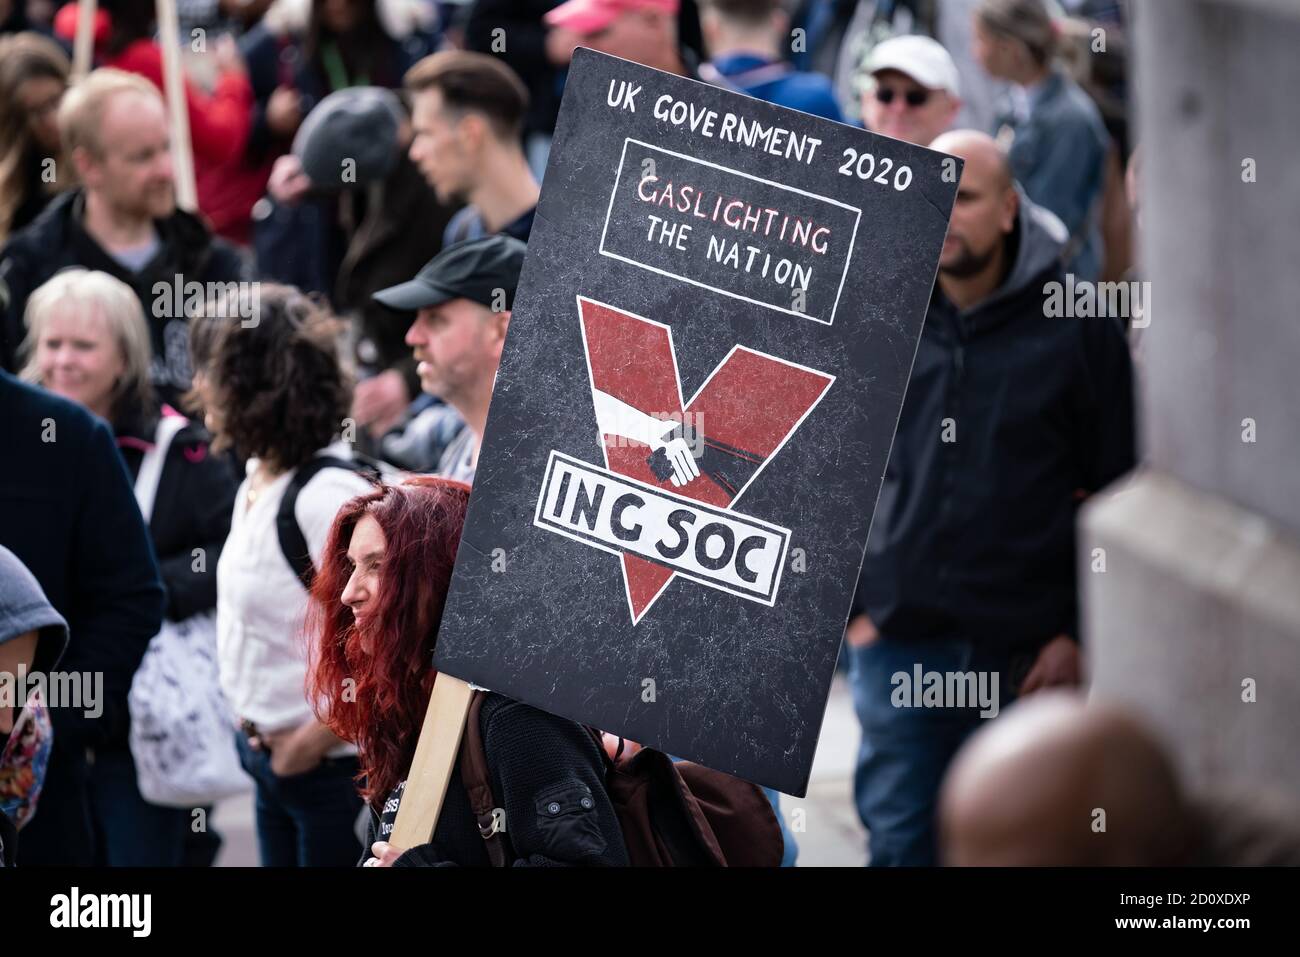 Miles de manifestantes desenmascarados ignoran el distanciamiento social por la protesta y manifestación contra el cierre de la cárcel por "no consentimos" en Trafalgar Square, Londres, Reino Unido. Foto de stock